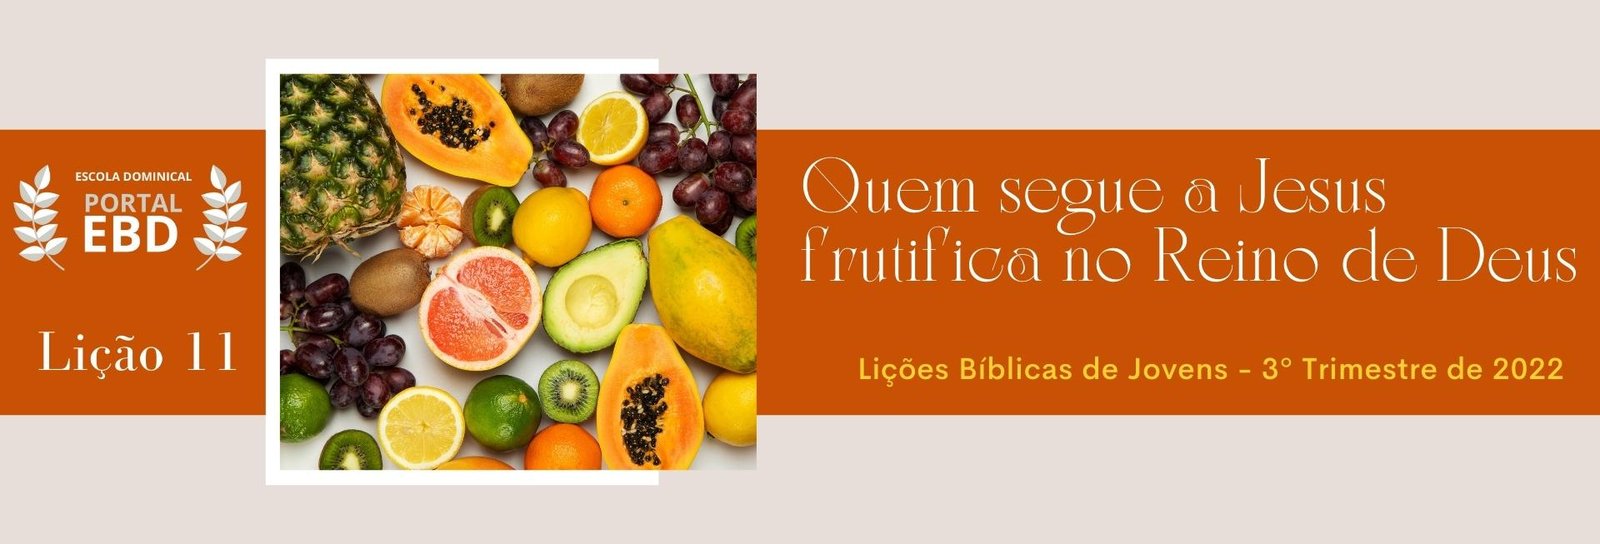 Lição 11 - Quem segue a Cristo frutifica no reino de Deus I